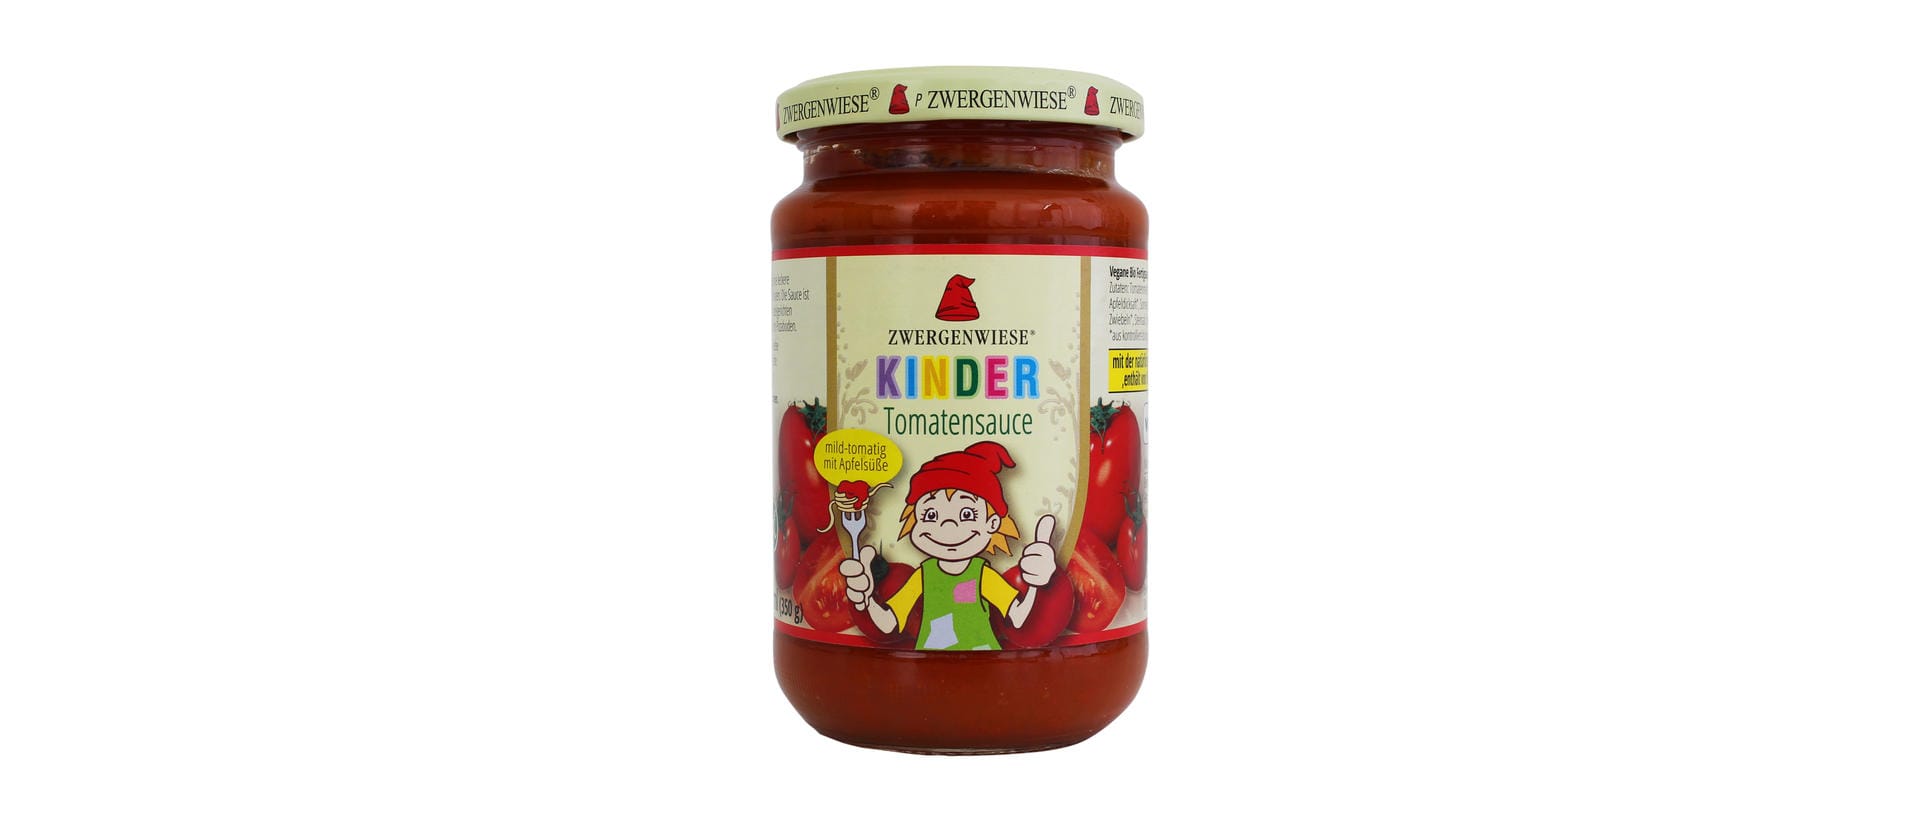 Der Name sowie die Verpackung suggeriert Verbrauchern, dass das Produkt für Kinder geeignet sei. Die Tomatensoße von Zwergenwiese für Kinder enthält laut Foodwatch allerdings doppelt so viel Zucker wie die Tomatensoße für Erwachsene.